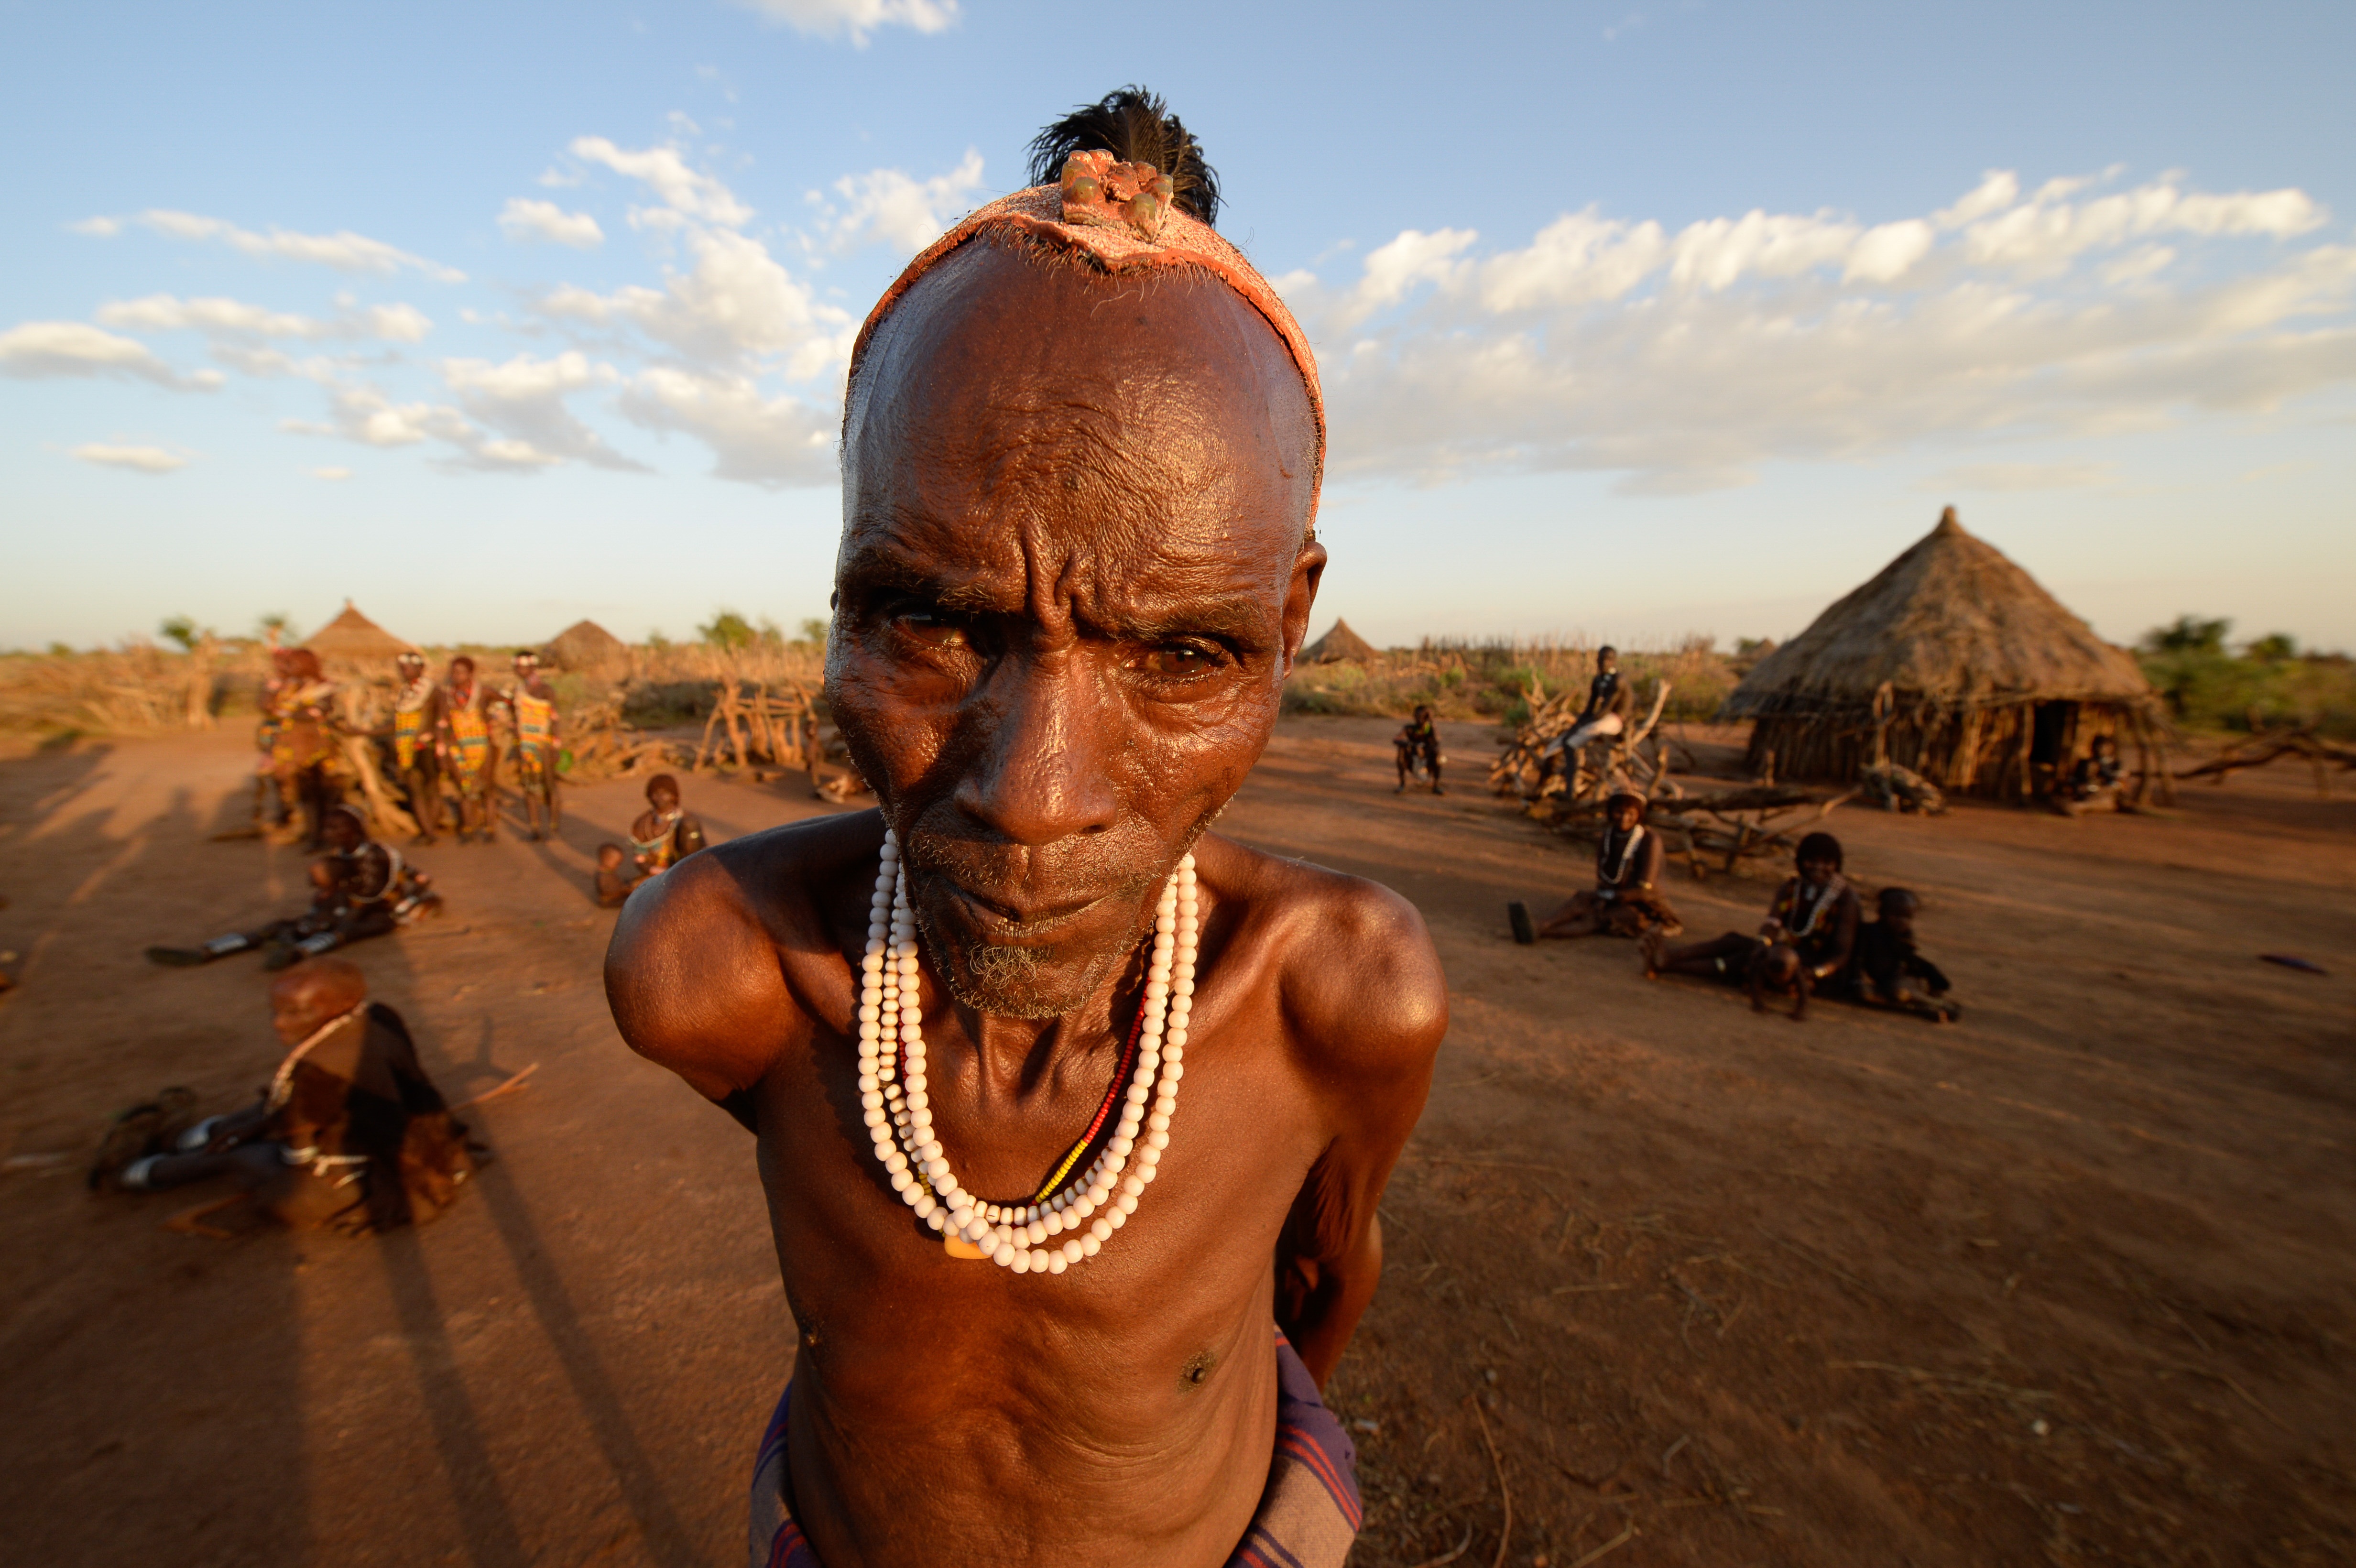 Ethiopia & Kenya - The Cradle of Humanity